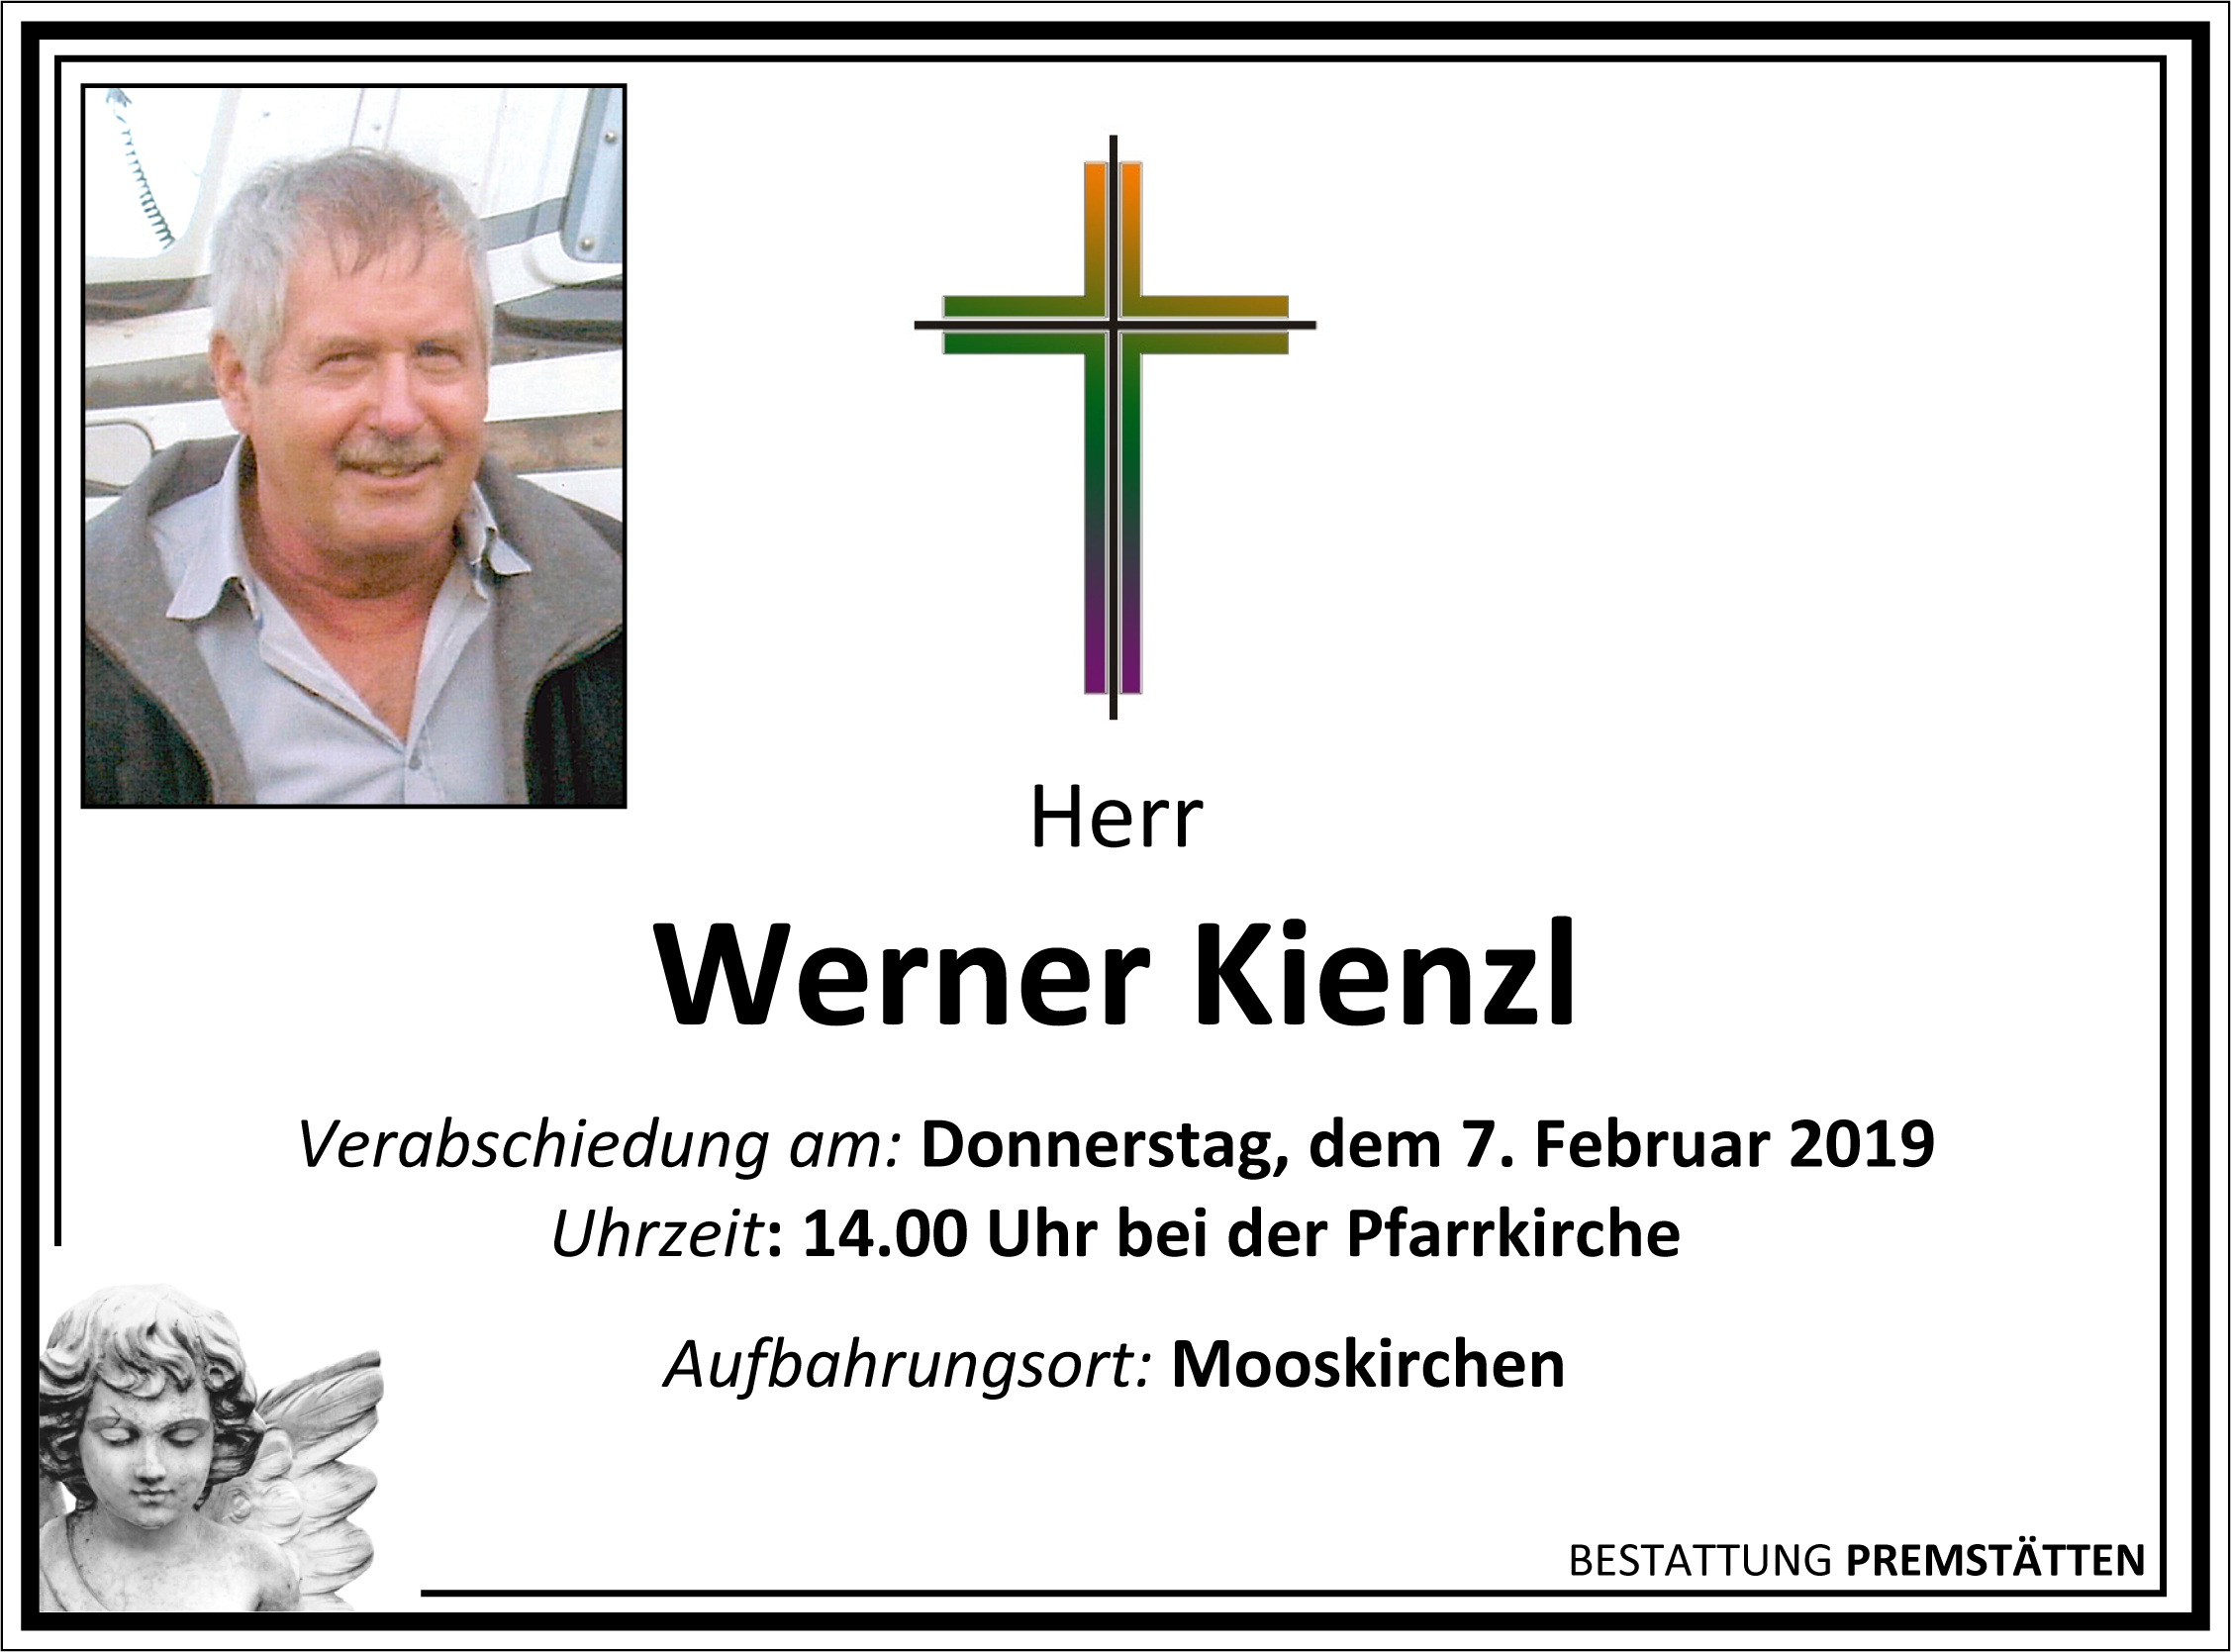 Werner Kienzl